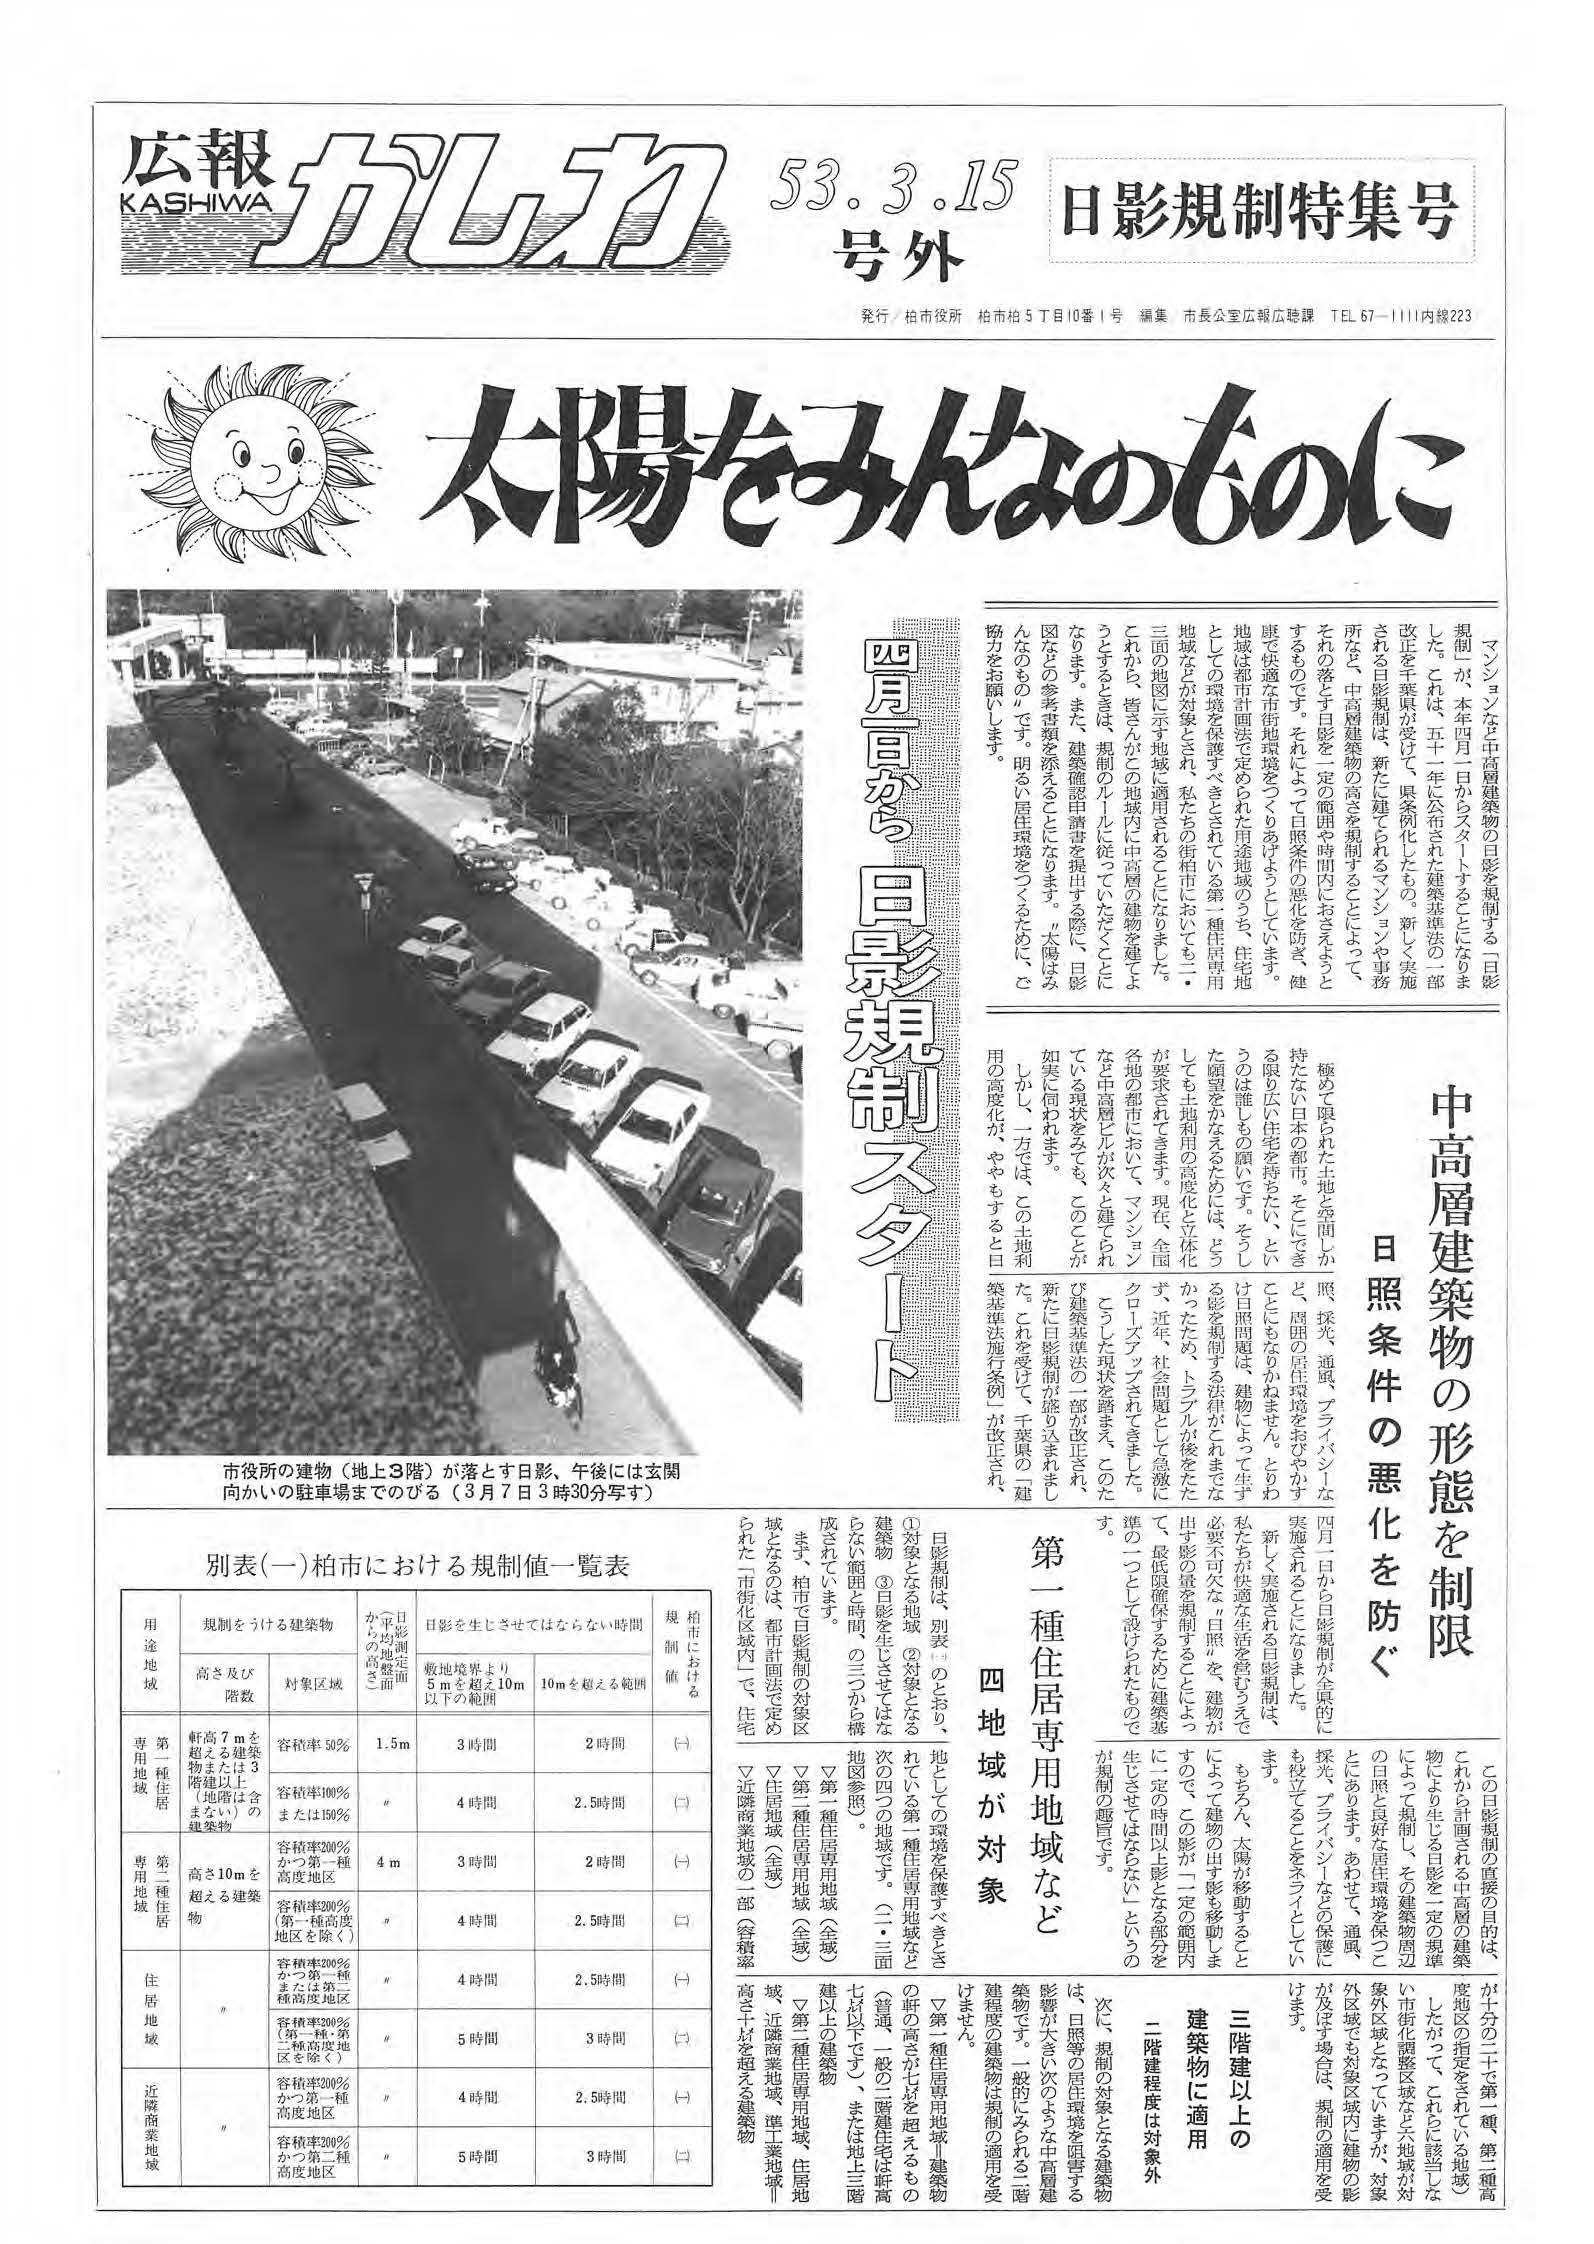 広報かしわ　昭和53年3月15日発行　日影規制特集号